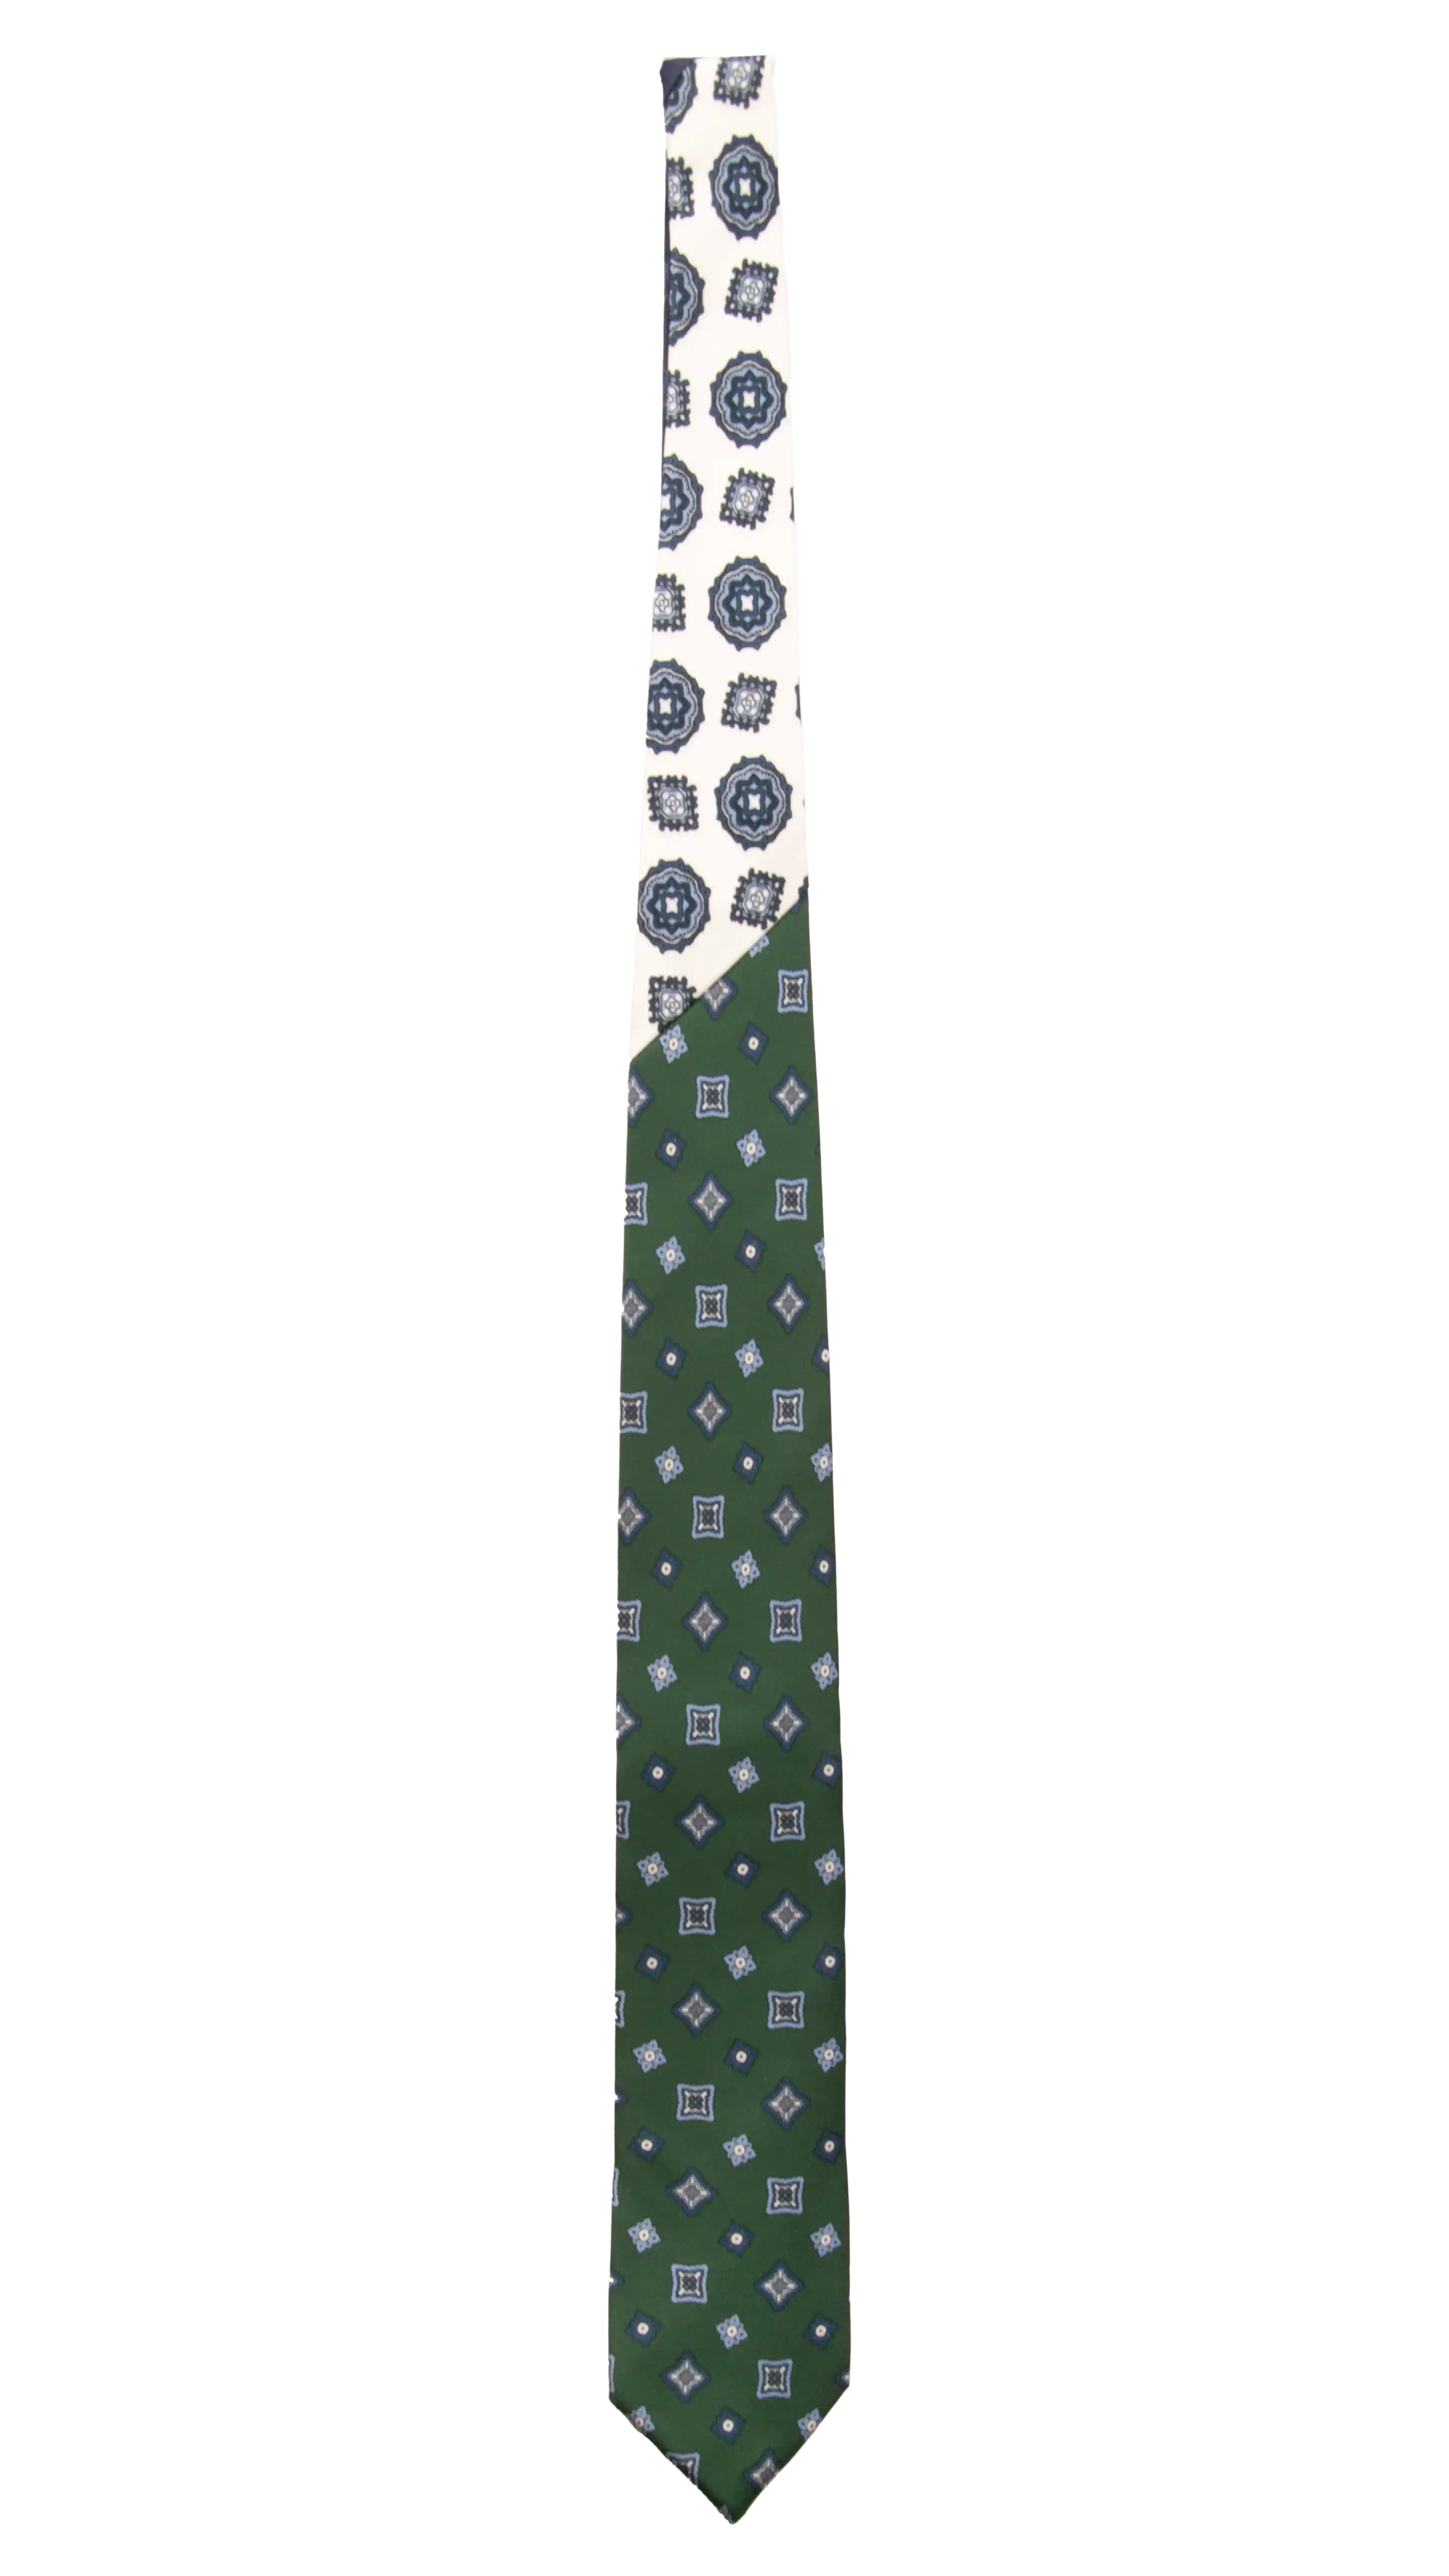 Cravatta Stampa Verde Fantasia Blu Celeste Nodo in Contrasto Bianco a Medaglioni Made in Italy Graffeo Cravatte Intera